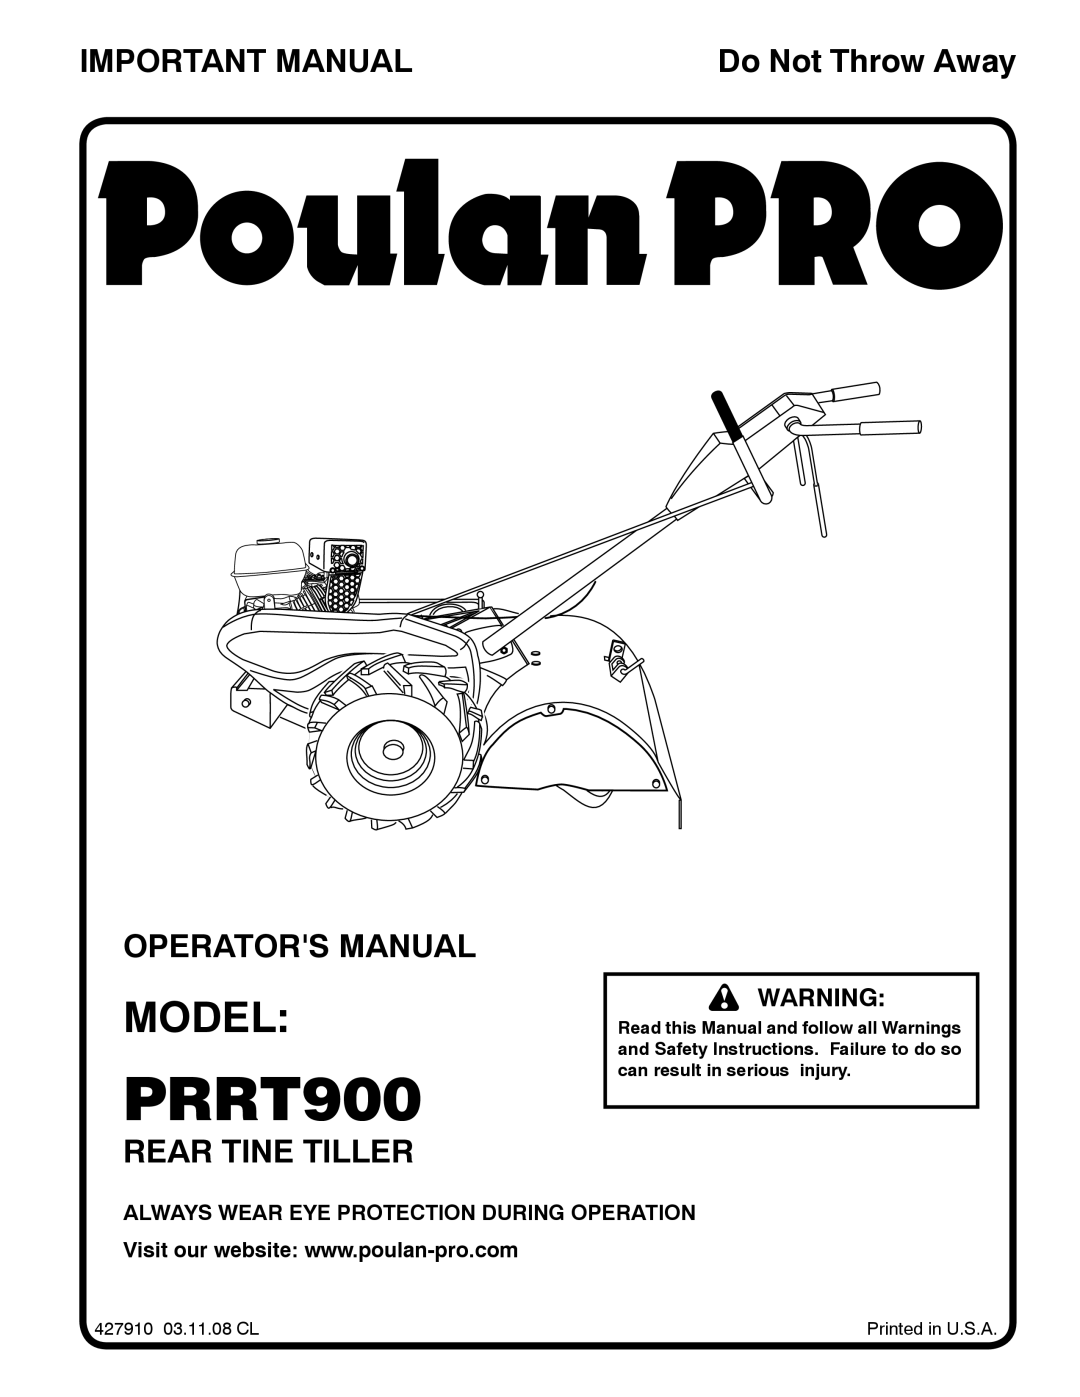 Poulan PRRT900 manual Model, Important Manual, Operators Manual, Rear Tine Tiller, Do Not Throw Away 